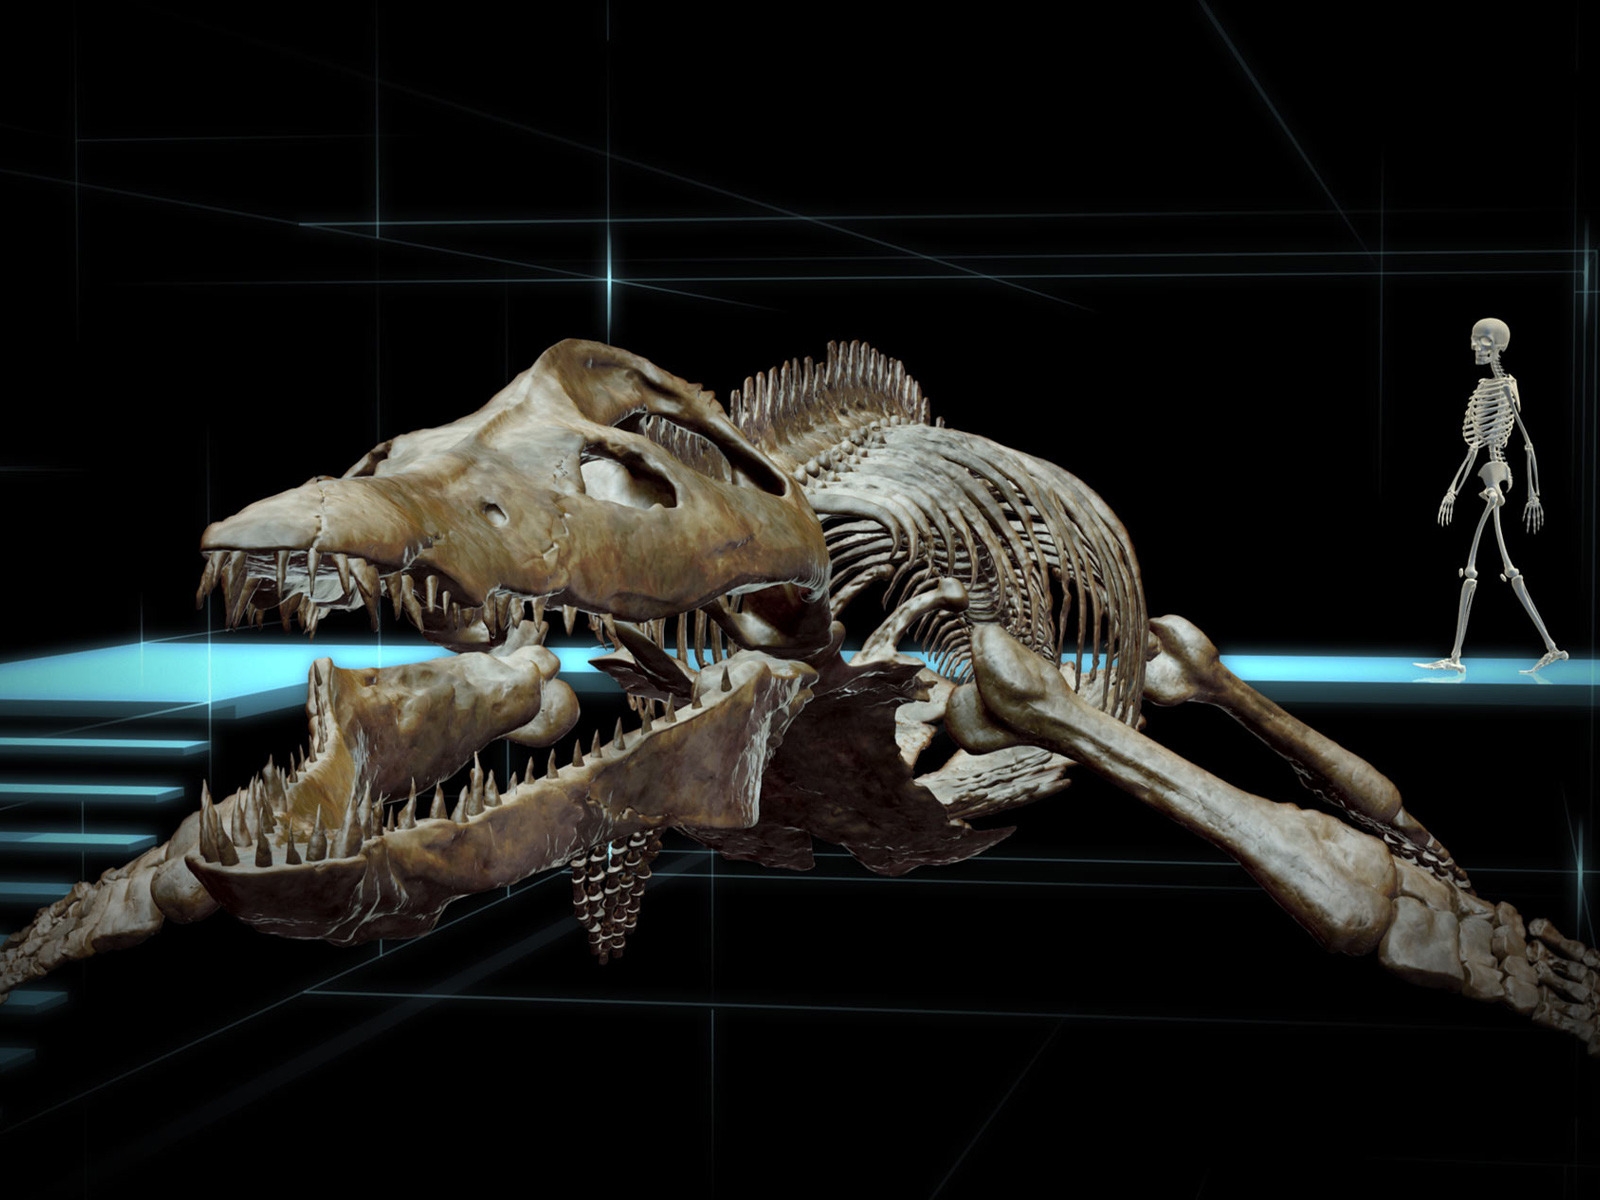 Kear Kronosaurus for 1600 x 1200 resolution